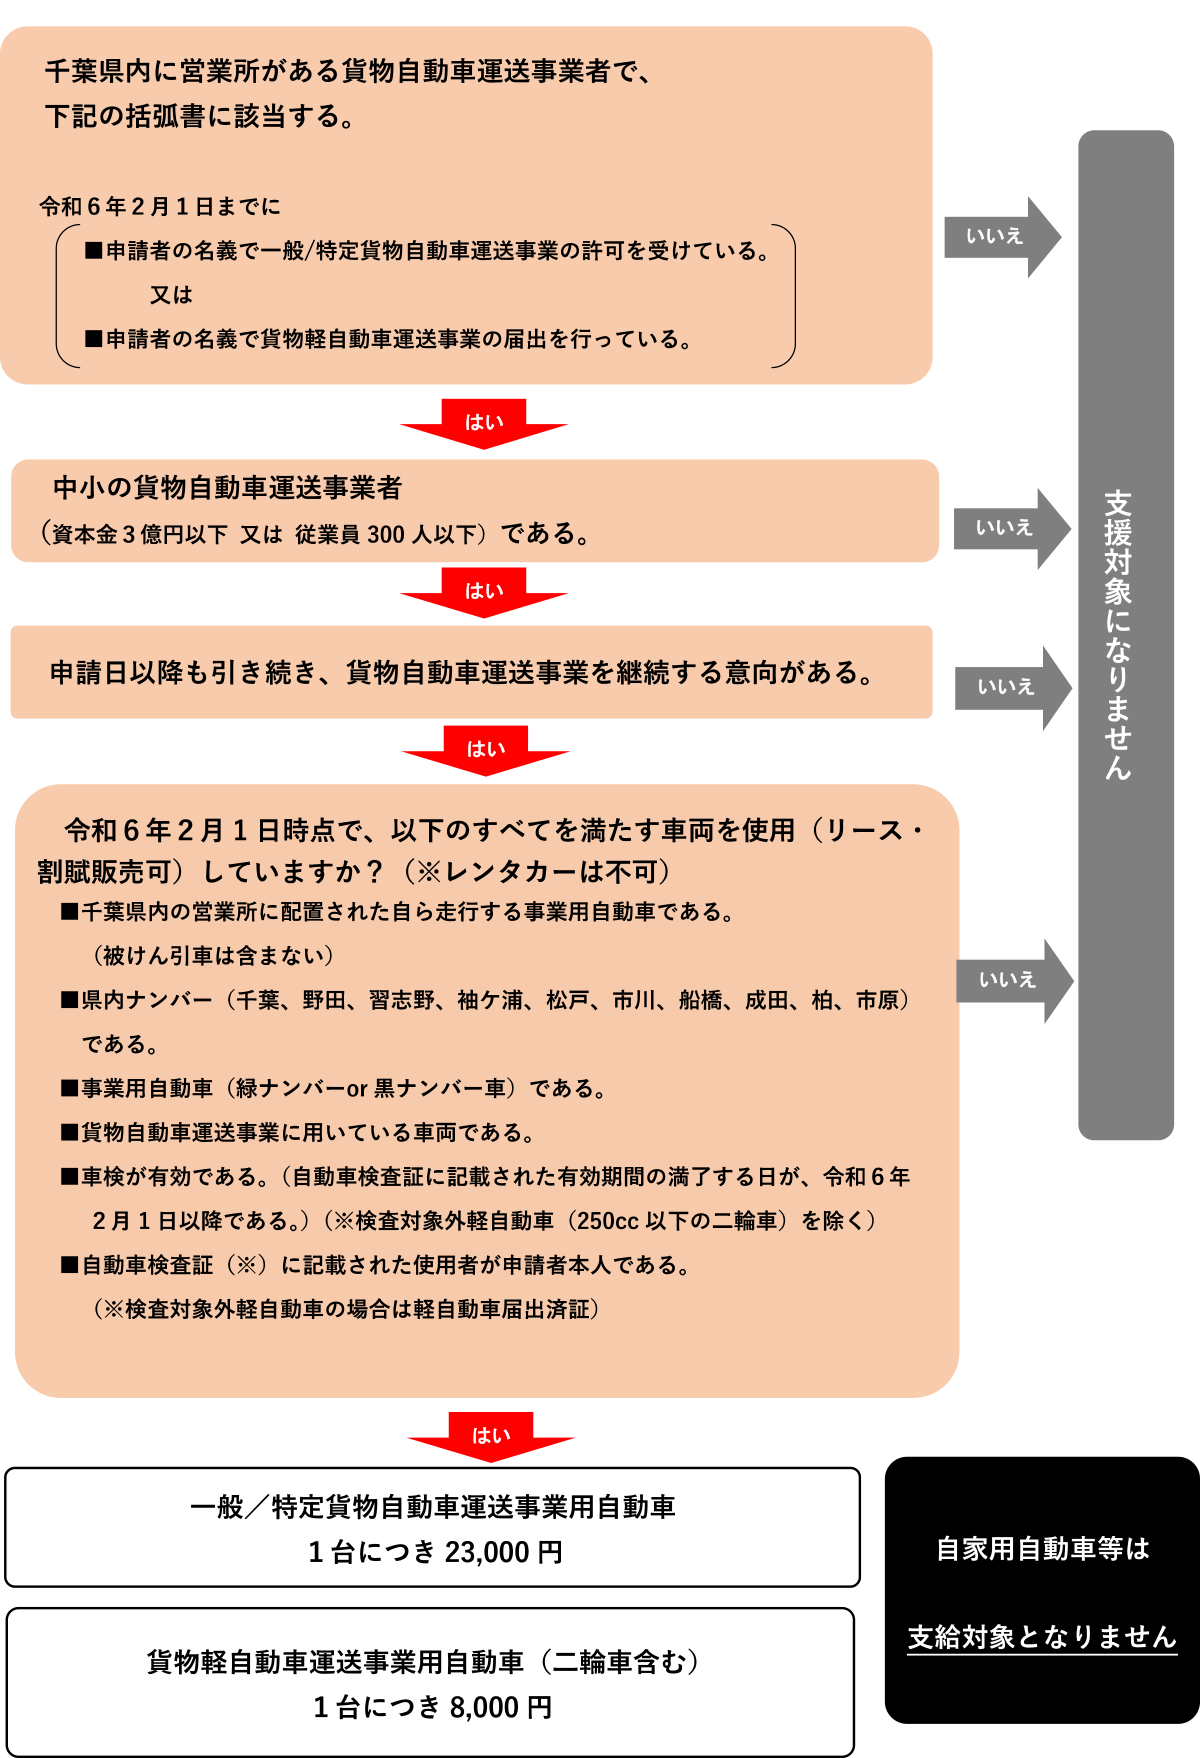 千葉県貨物運送事業者物価高騰対策支援対象判定フロー図（概要版）